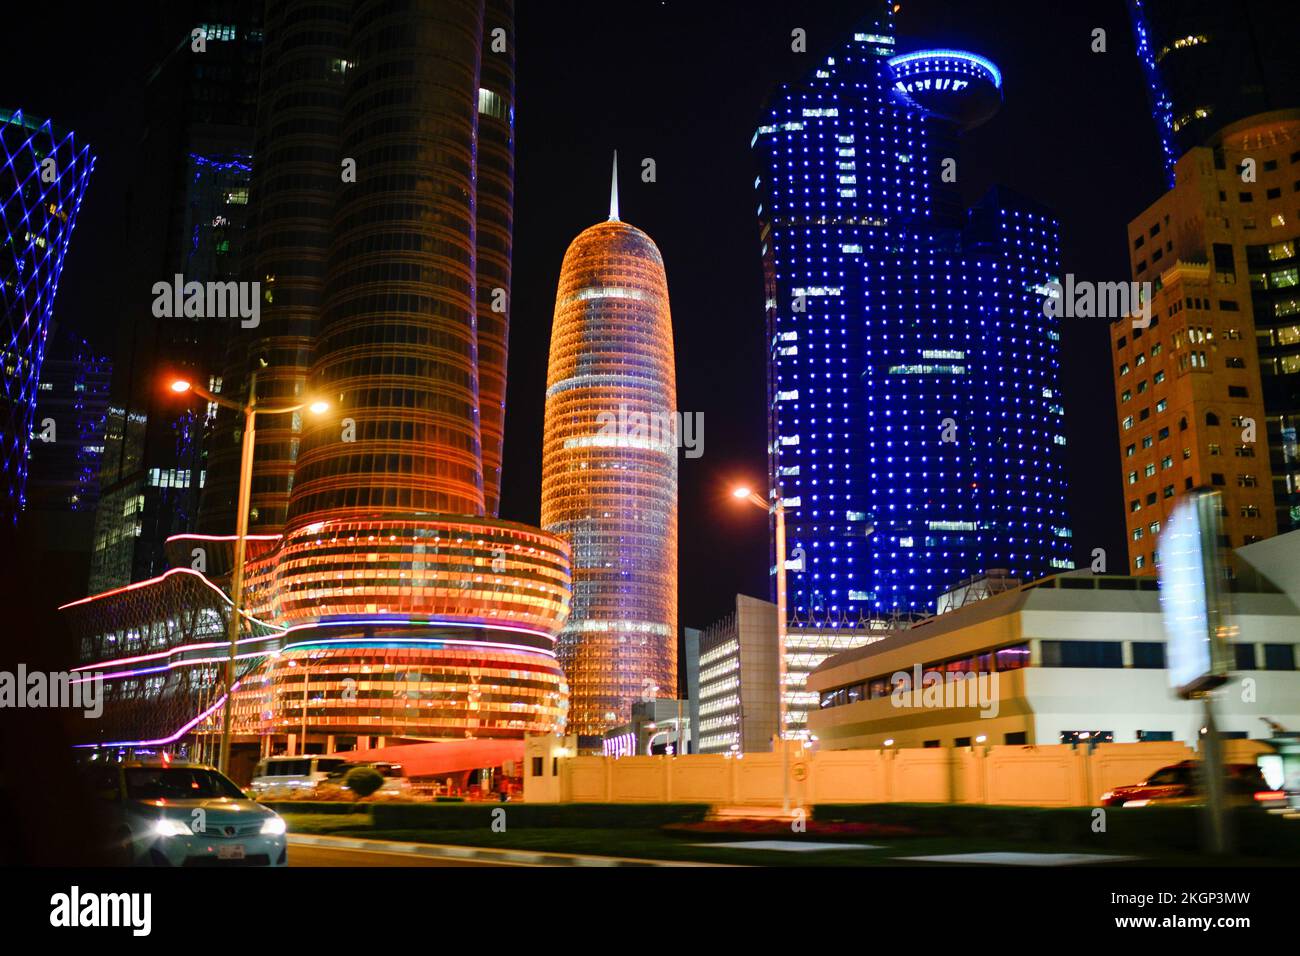 QATAR, DOHA, rascacielos de la bahía oriental, borrosa / KATAR, DOHA, Wolkenkratzer der Eastbay, verwischt Foto de stock